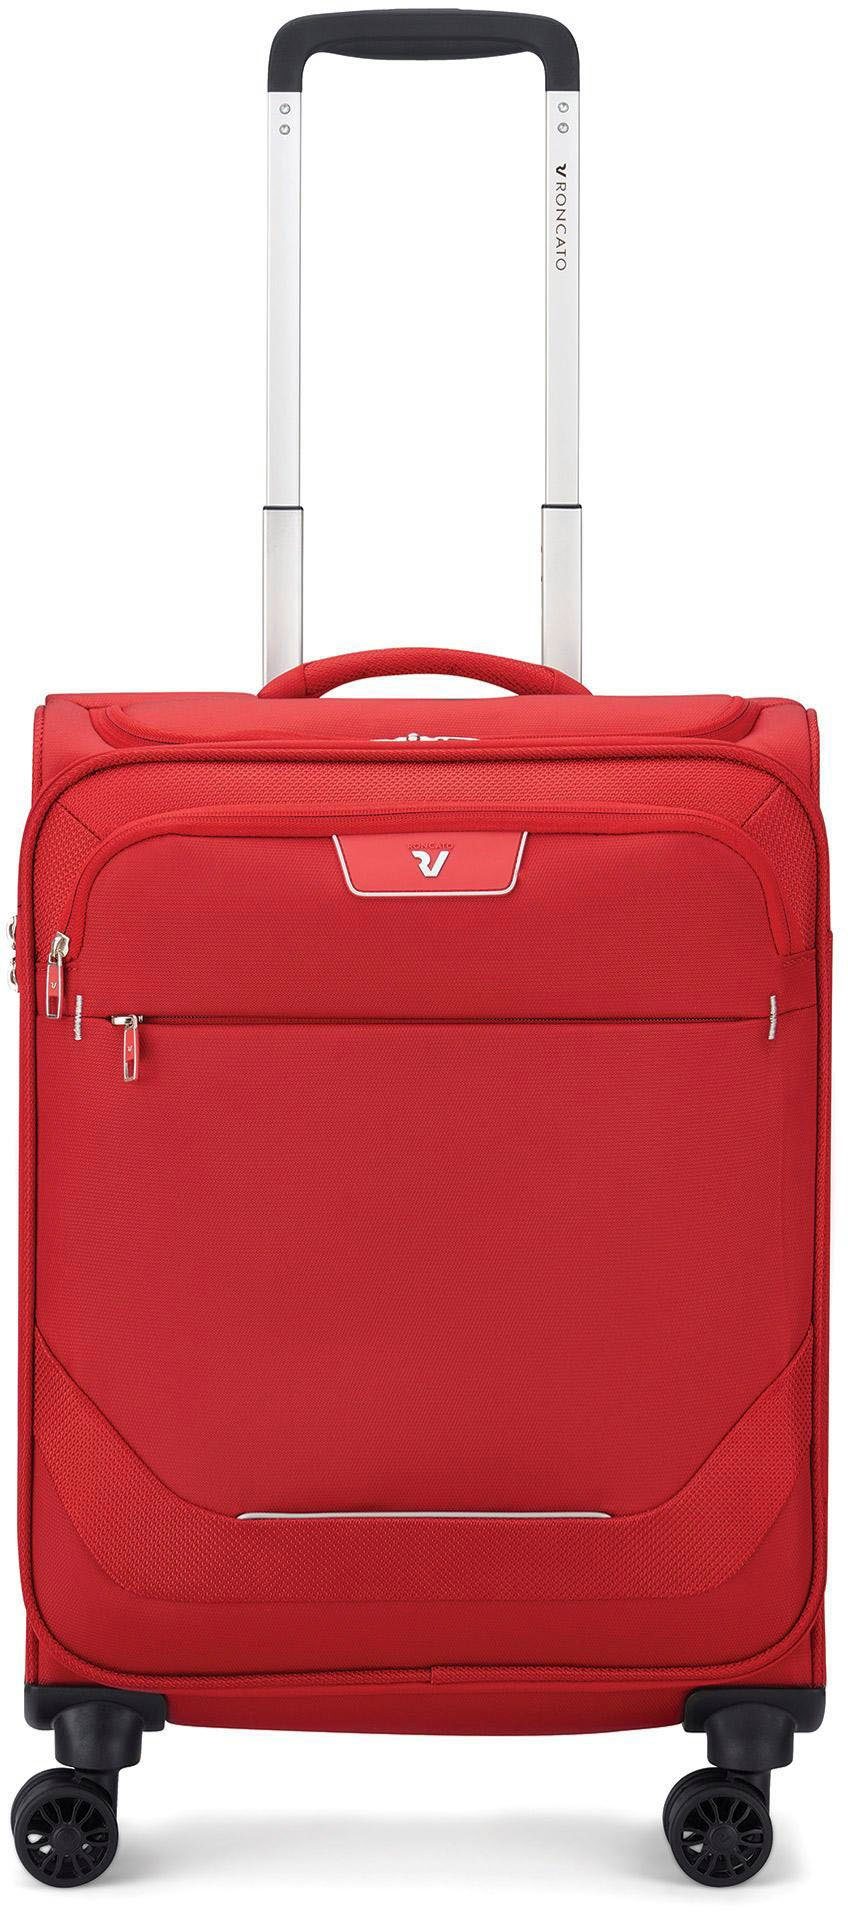 RONCATO Handgepäck-Trolley Joy Carry-on, 55 cm, erweiterbar, rot, 4 Rollen, mit Volumenerweiterung rosso